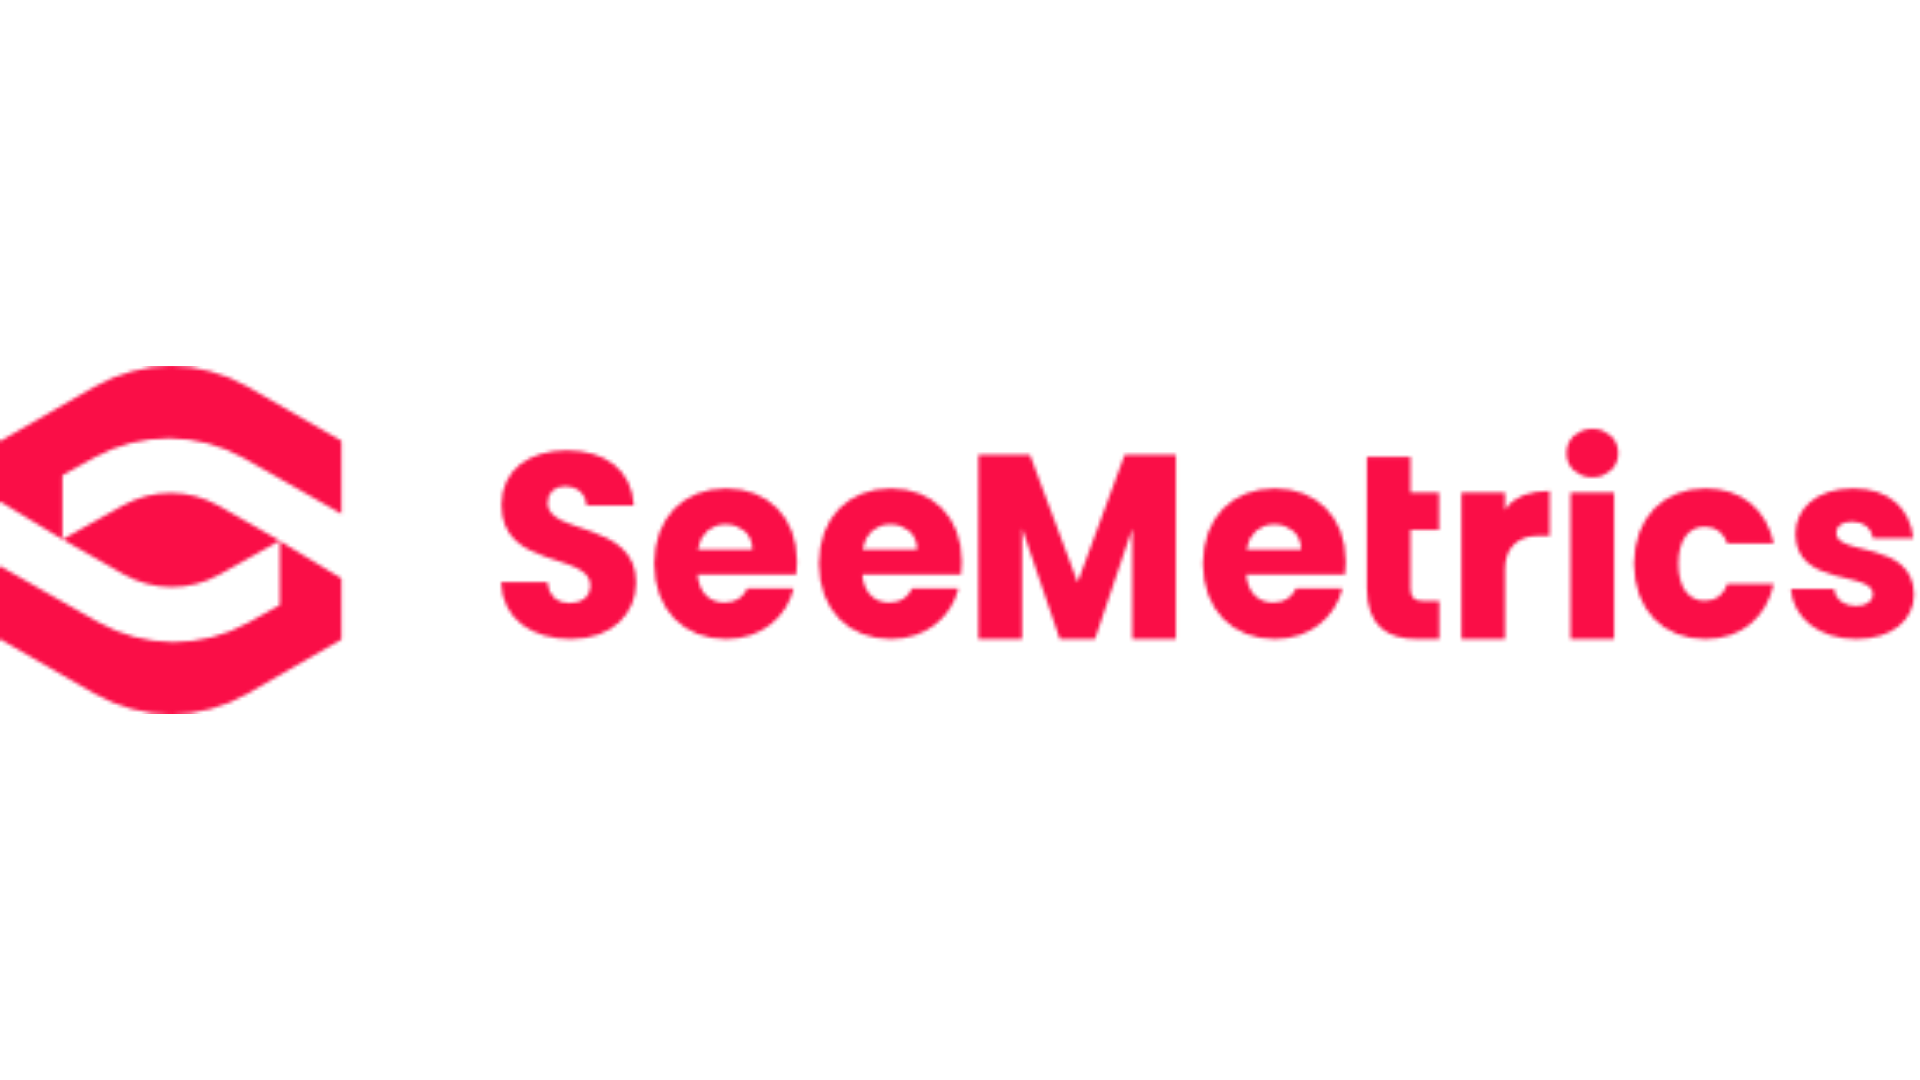 SeeMetrics logo